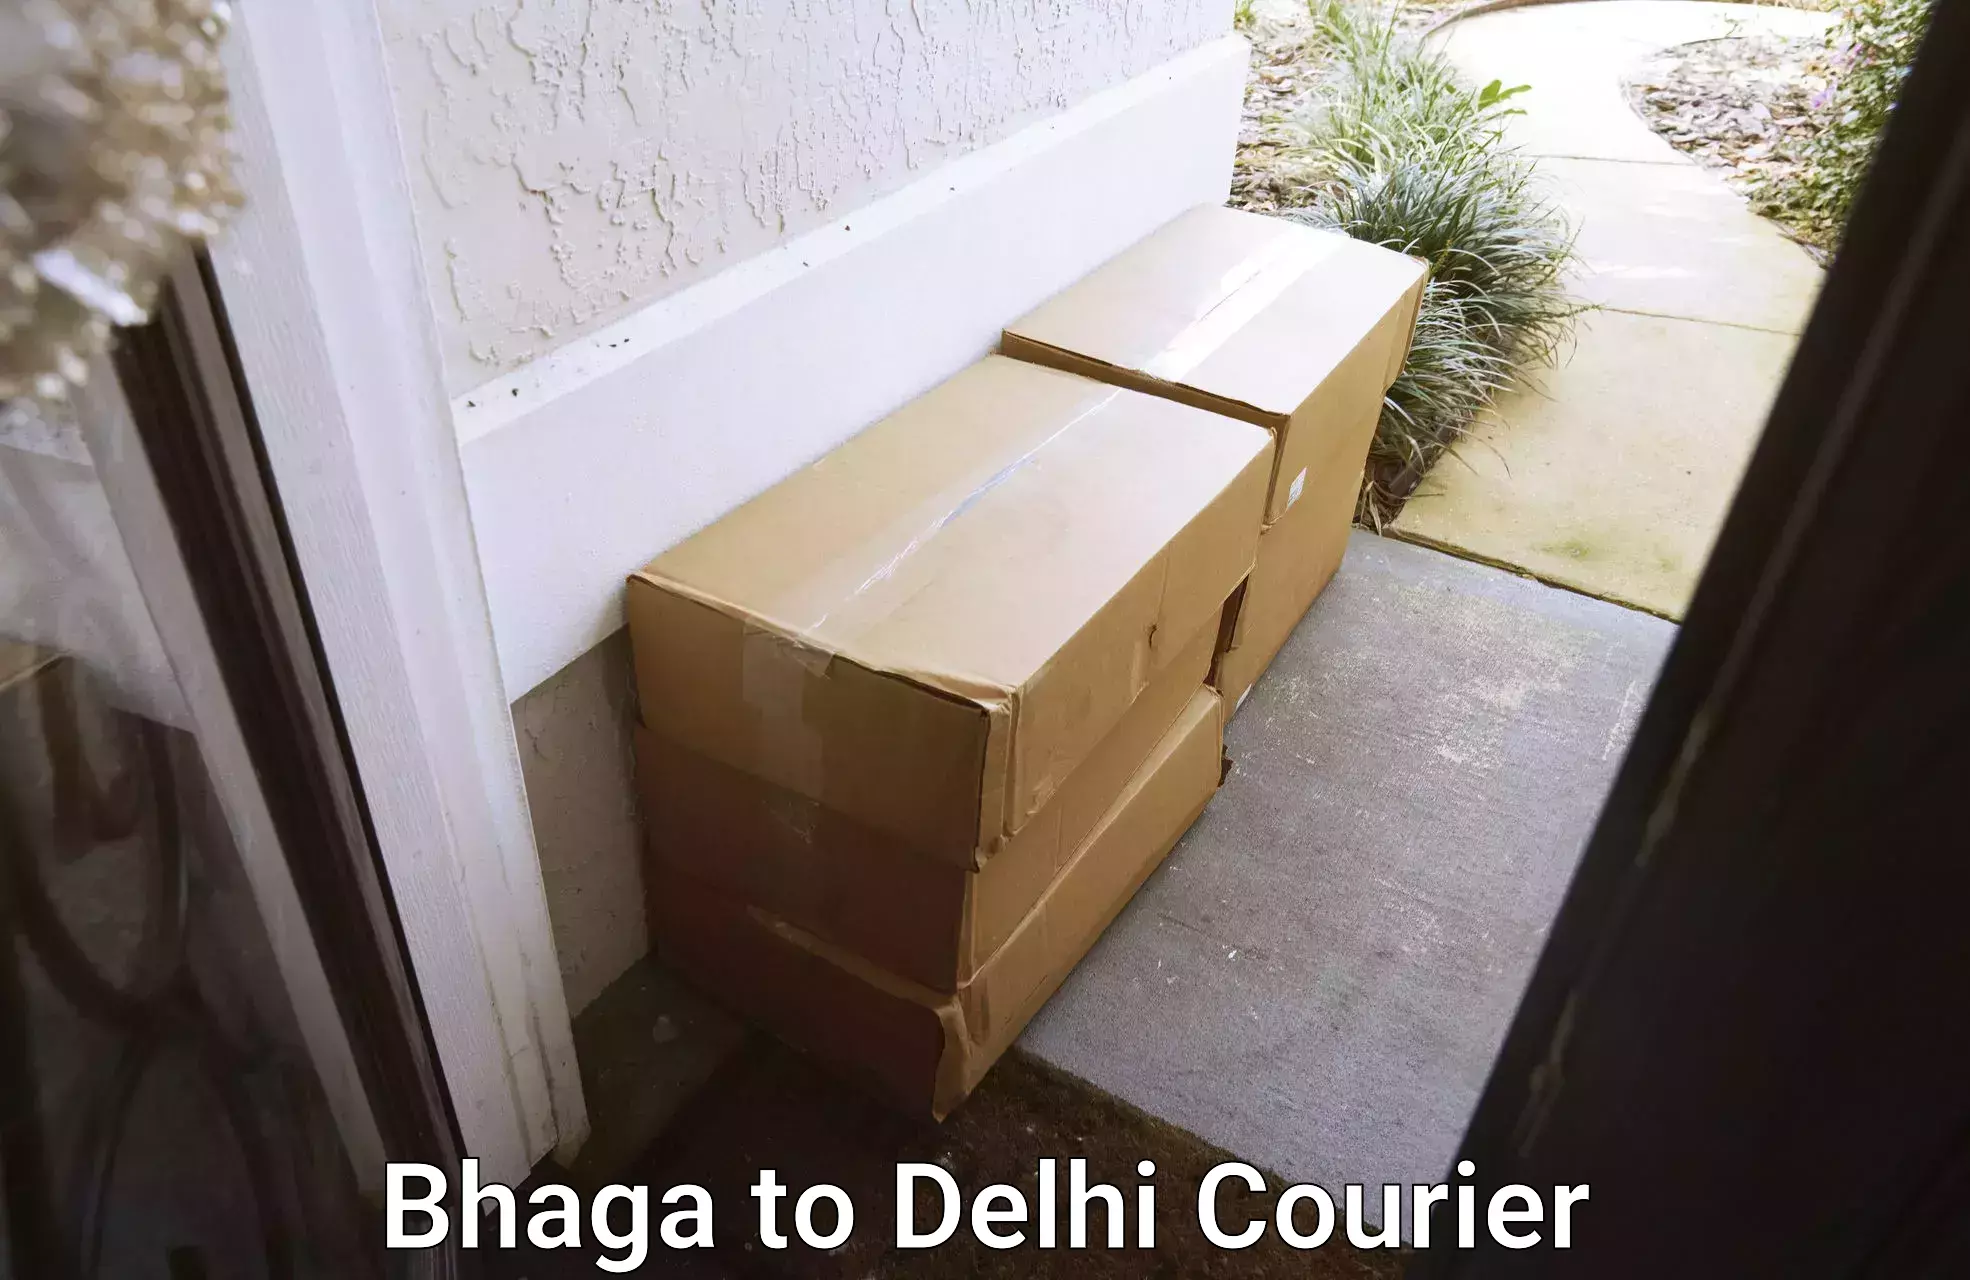 Efficient parcel service Bhaga to Burari